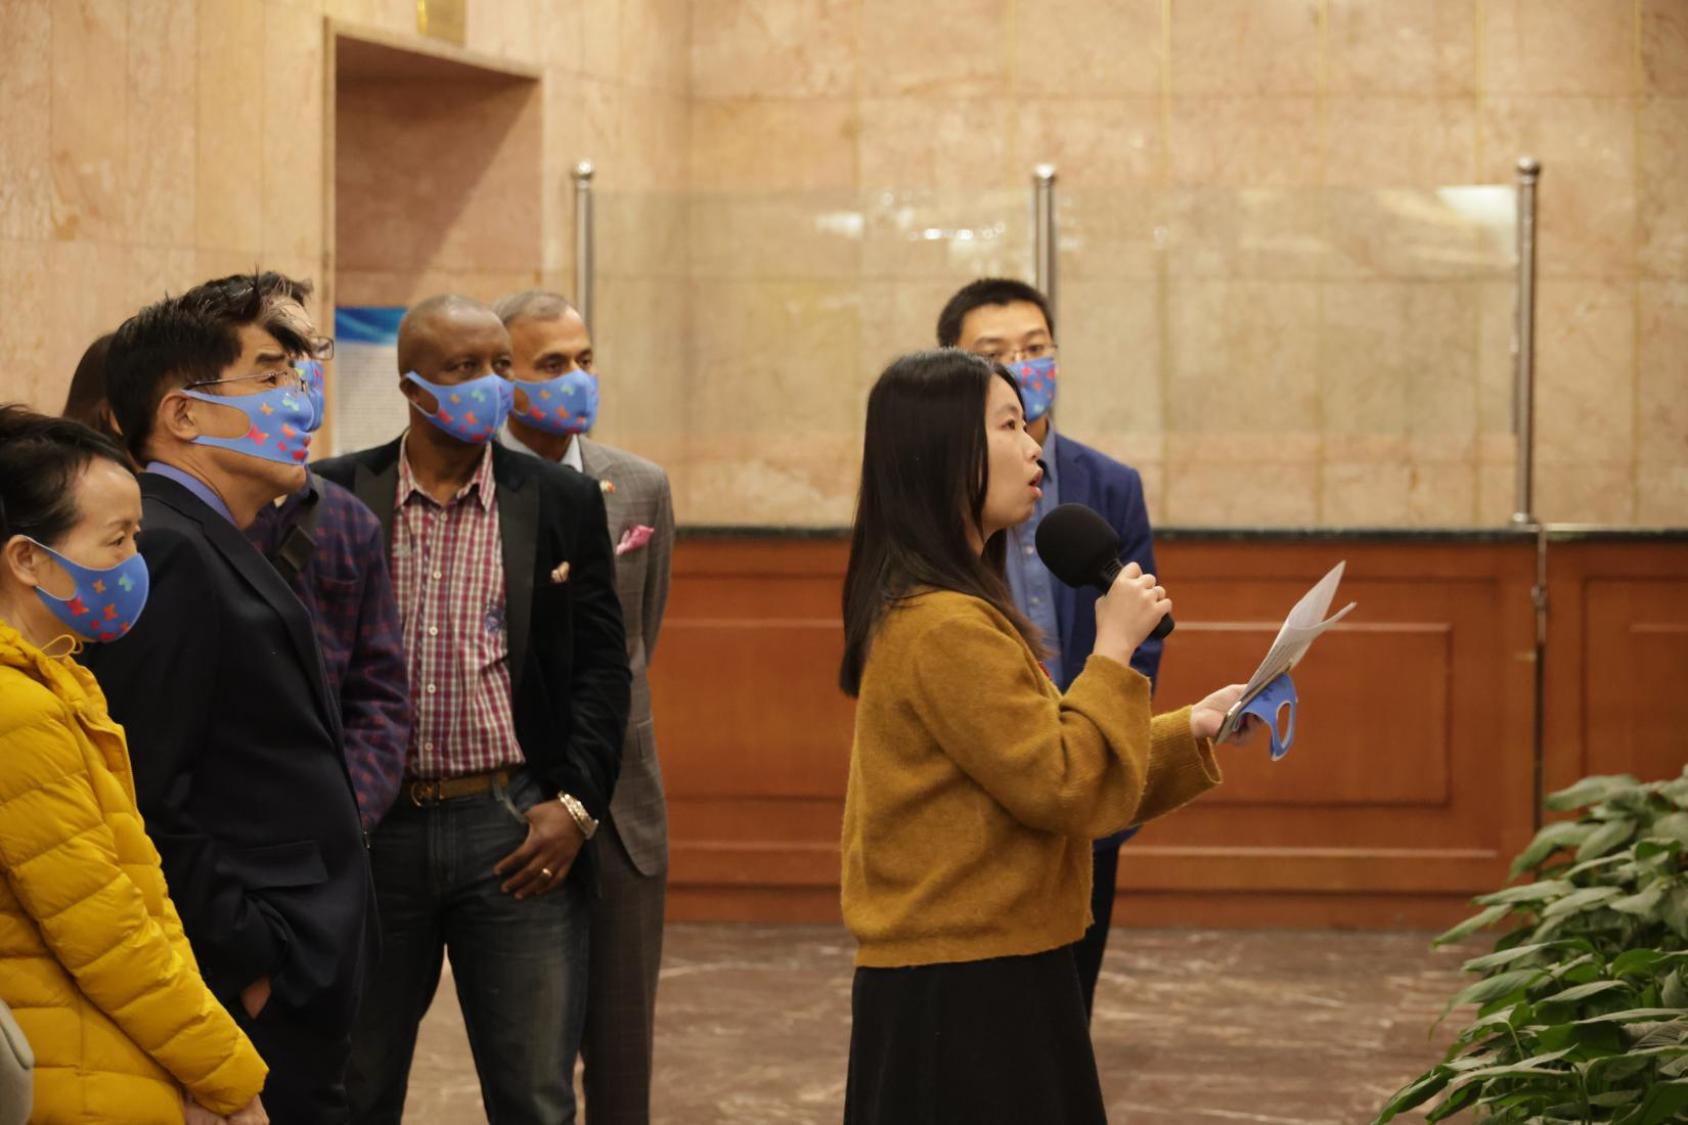 تقود وينغ هيلينغ (تحمل الميكروفون في الأمام) جولة في المعرض بمناسبة يوم الانعدام التام للتمييز.